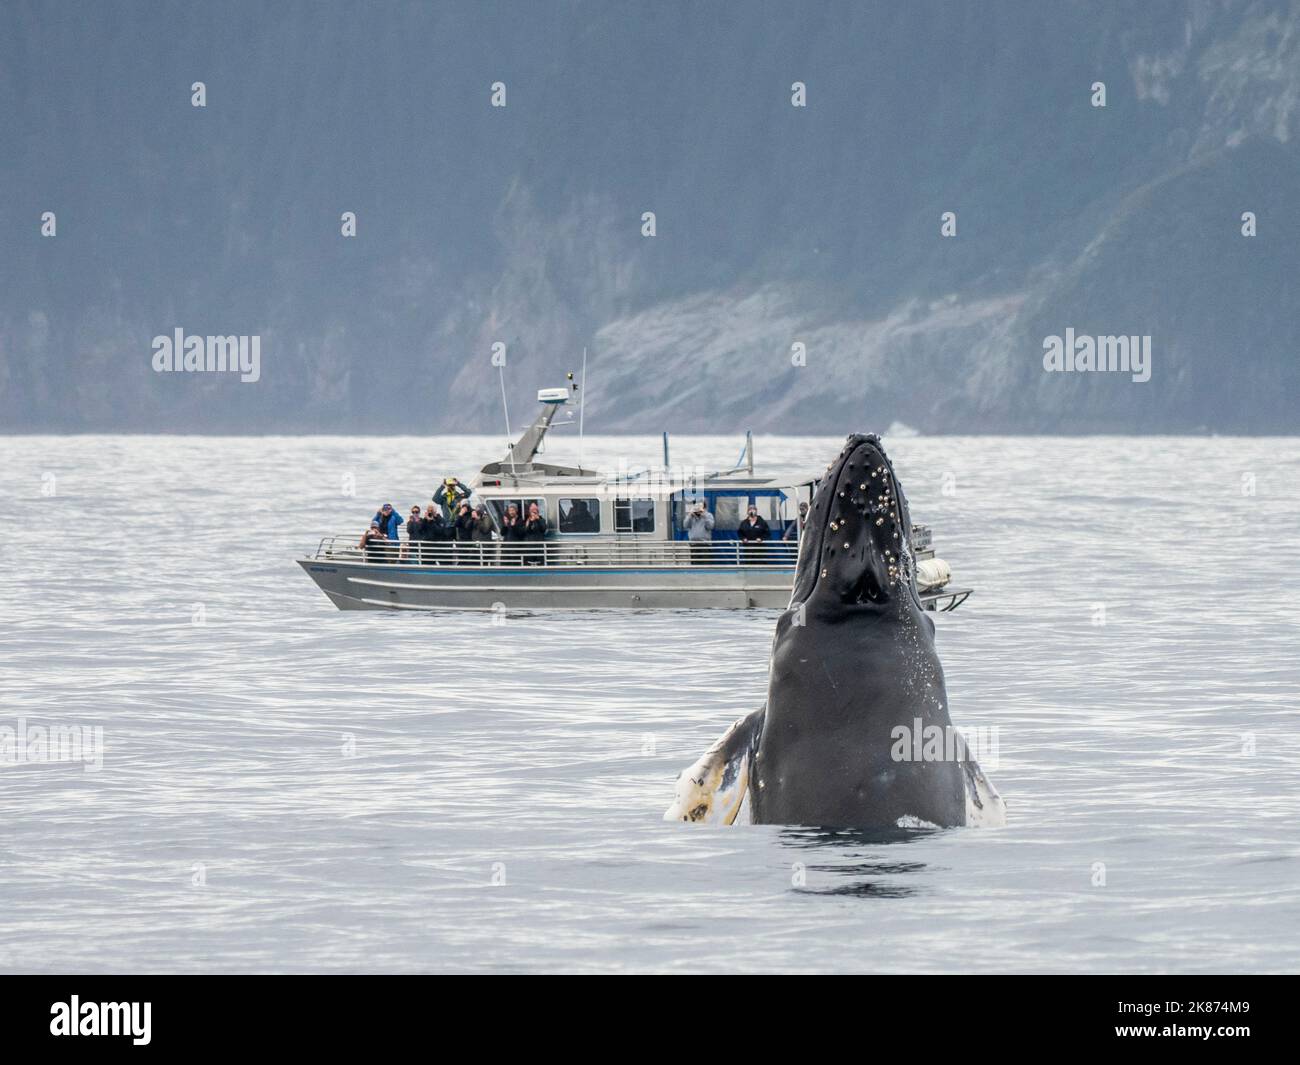 Une baleine à bosse adulte (Megaptera novaeangliae) se fait une tête-fente près du bateau dans le parc national de Kenai Fjords, Alaska, États-Unis d'Amérique, Amérique du Nord Banque D'Images